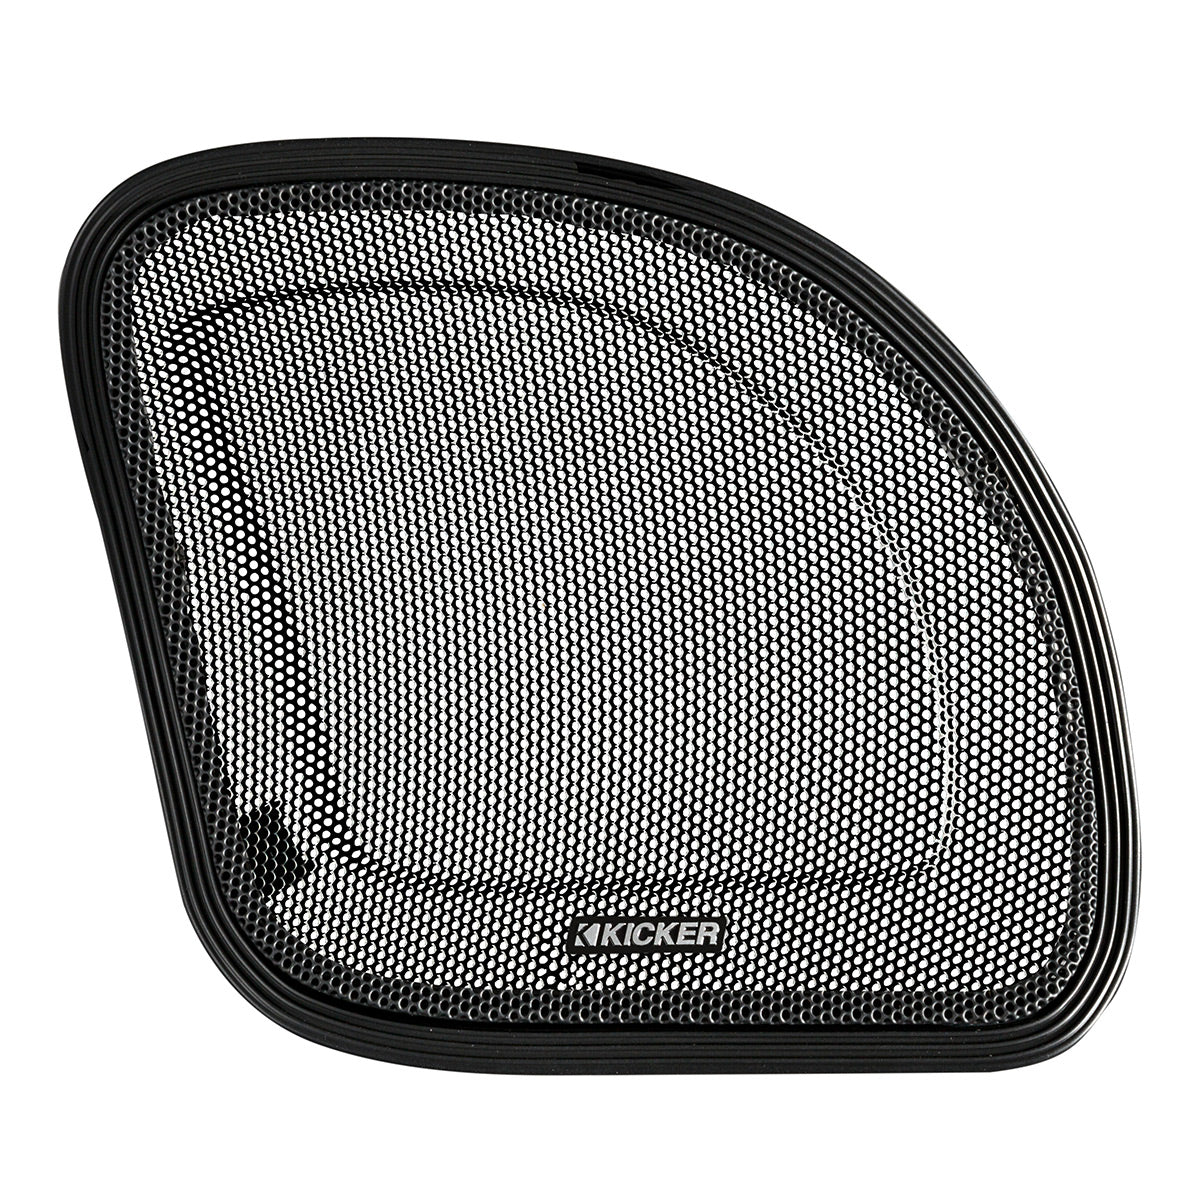 Kicker 50HDR154 6.5" 4 Channel Speaker Kit for Harley Davidson 2015 & Up Road Glide